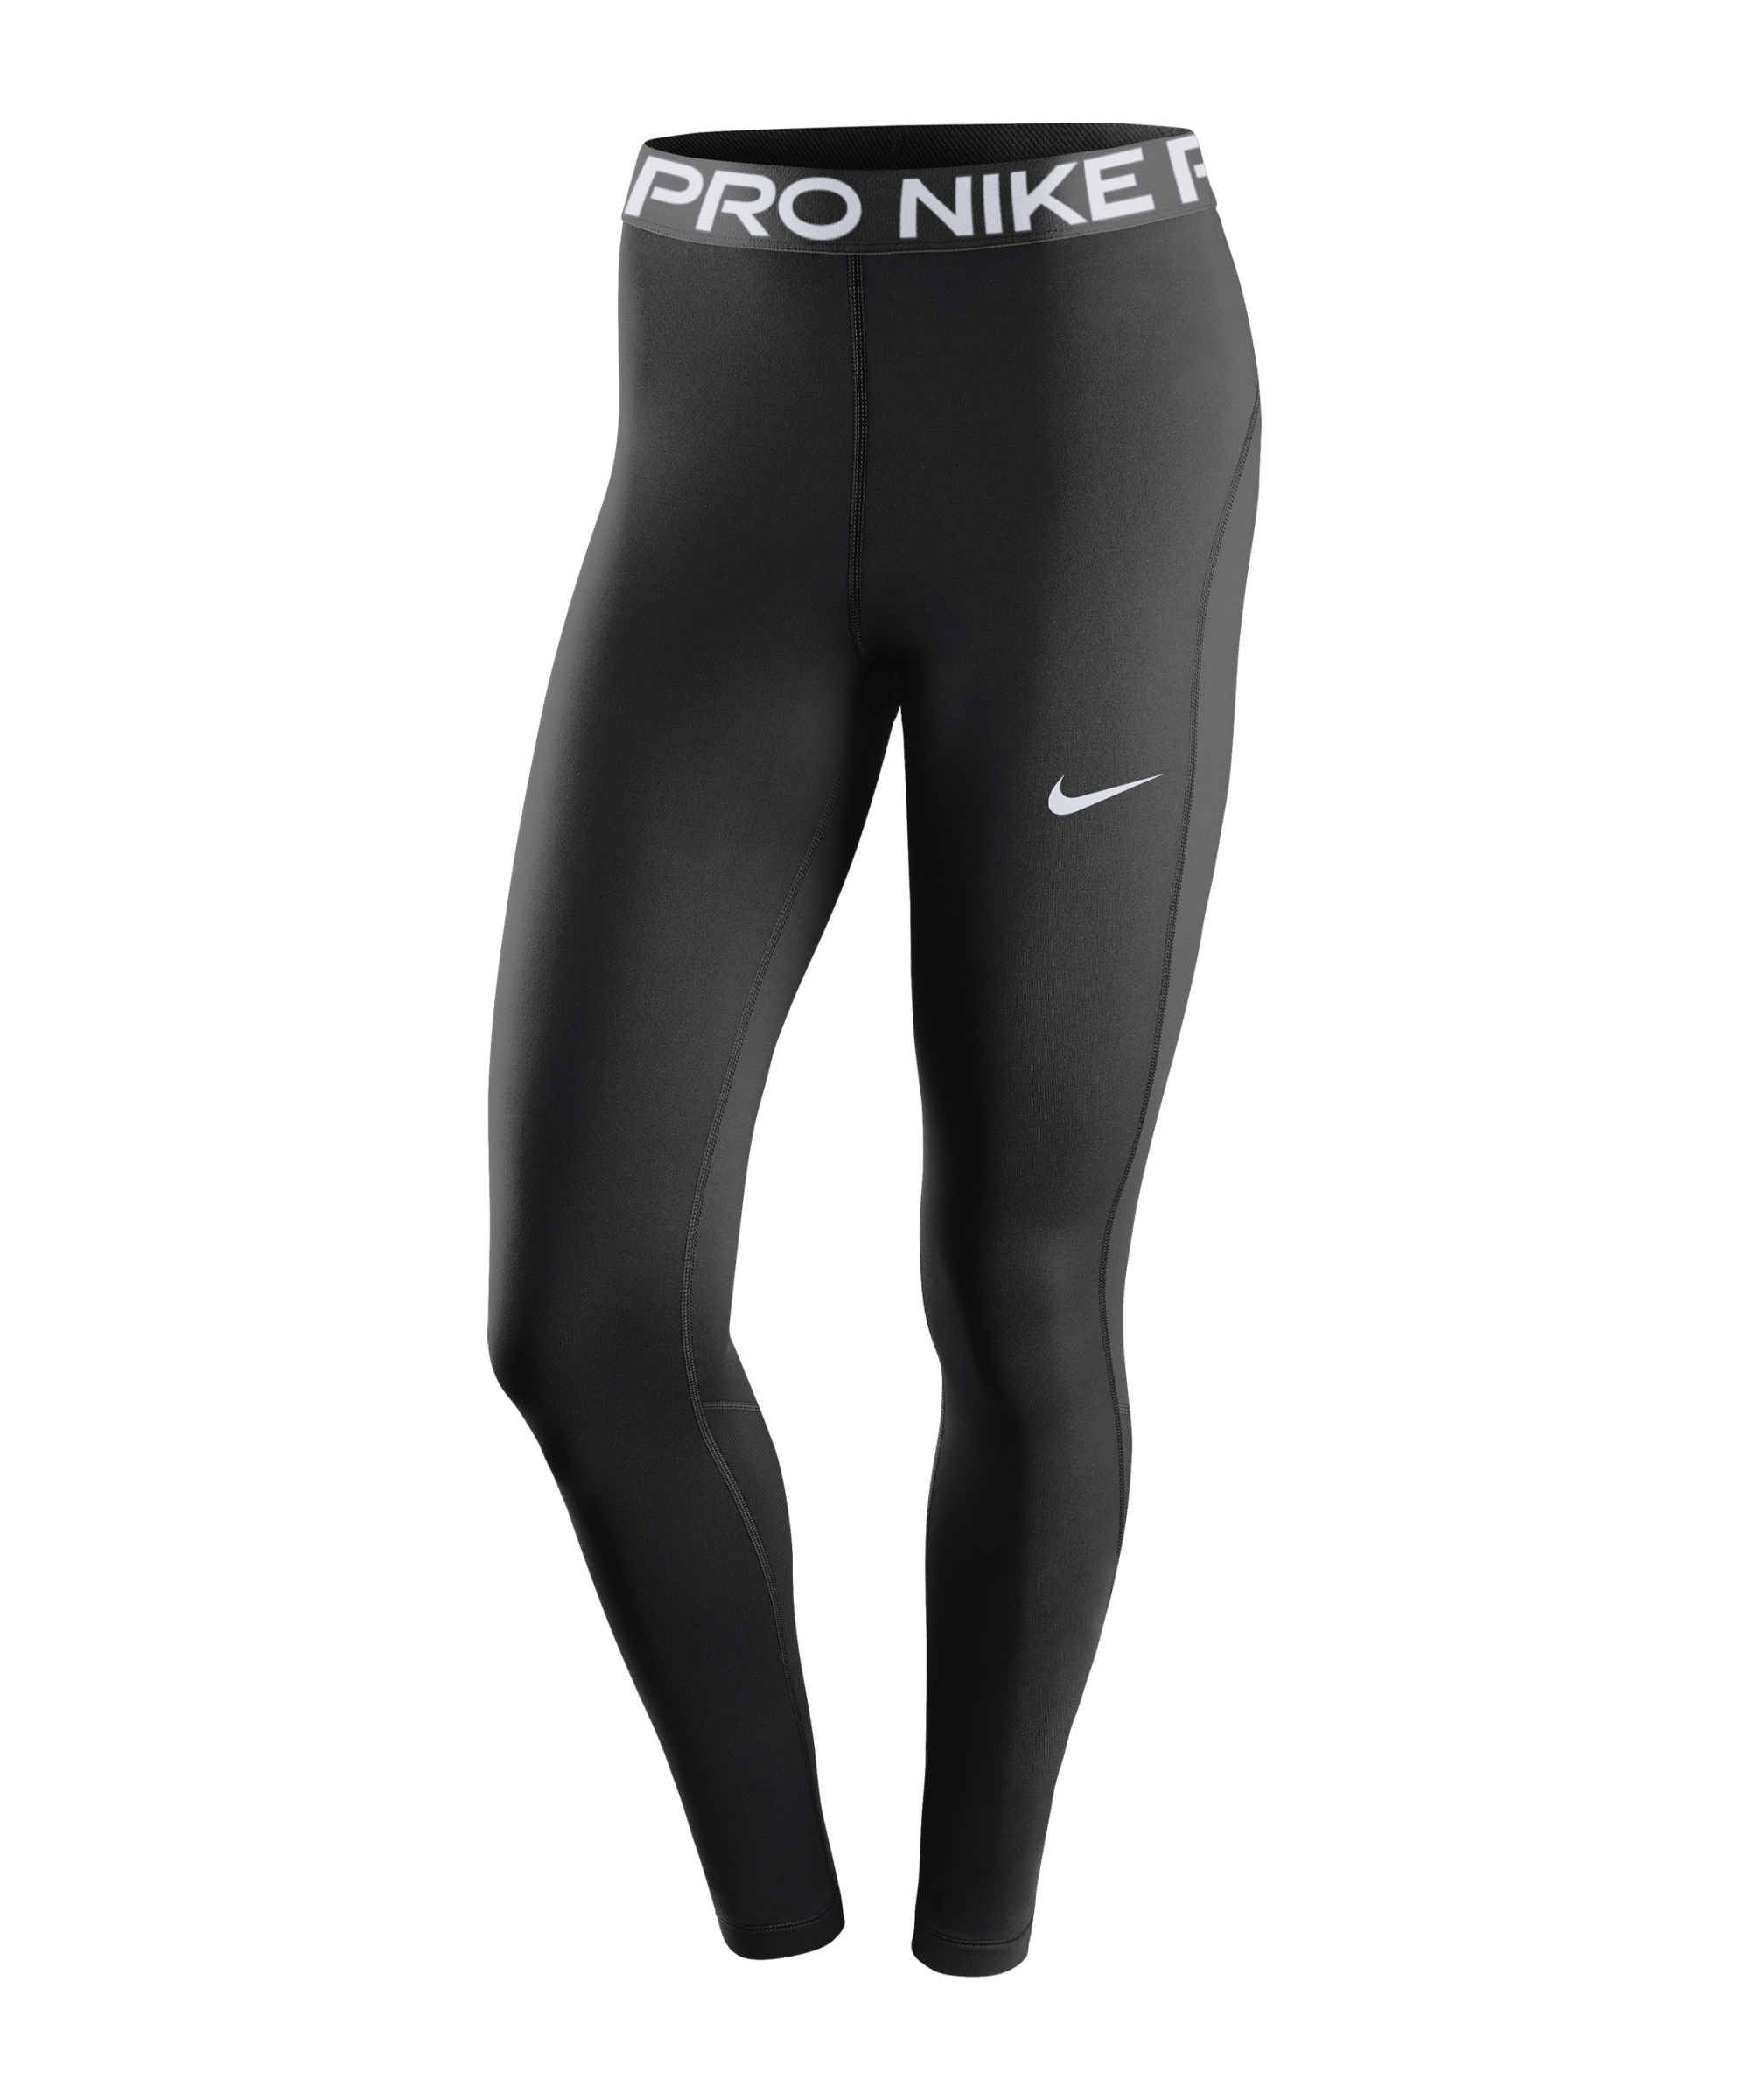 Nike Damen Tights Pro 365 schwarz-weiß